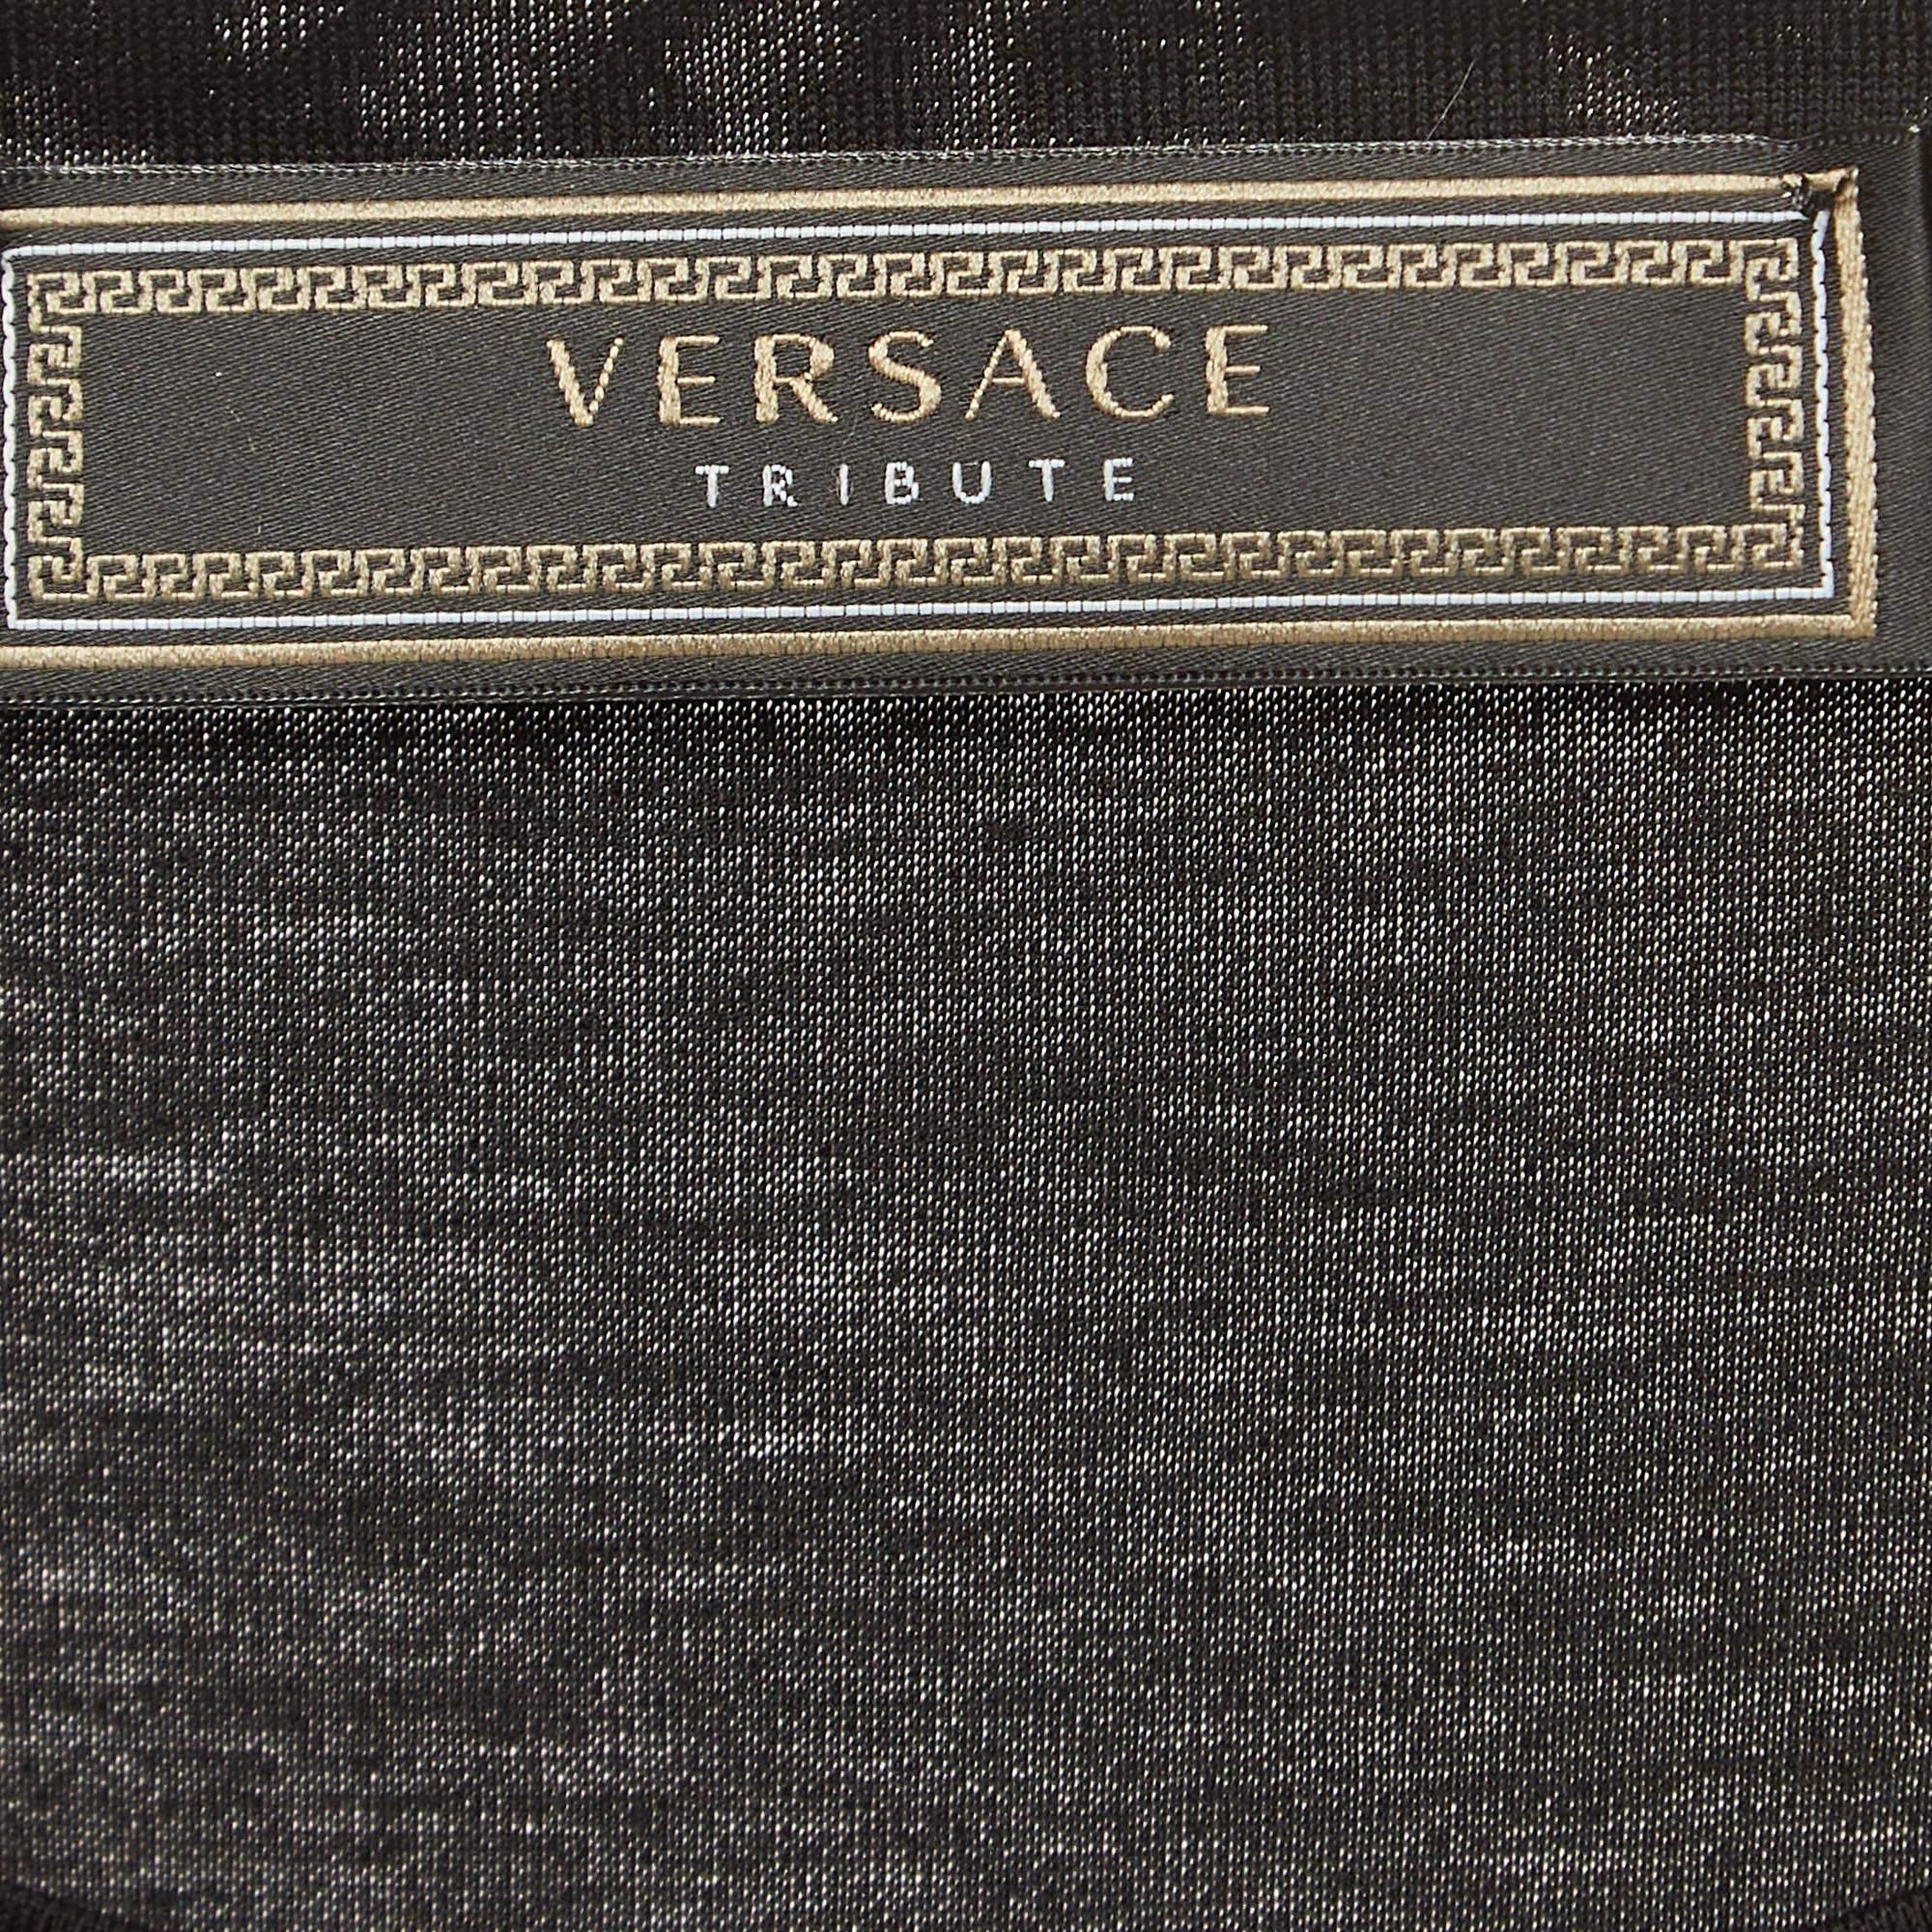 Versace Tribute Black Logo Cotton T-Shirt L In Excellent Condition For Sale In Dubai, Al Qouz 2